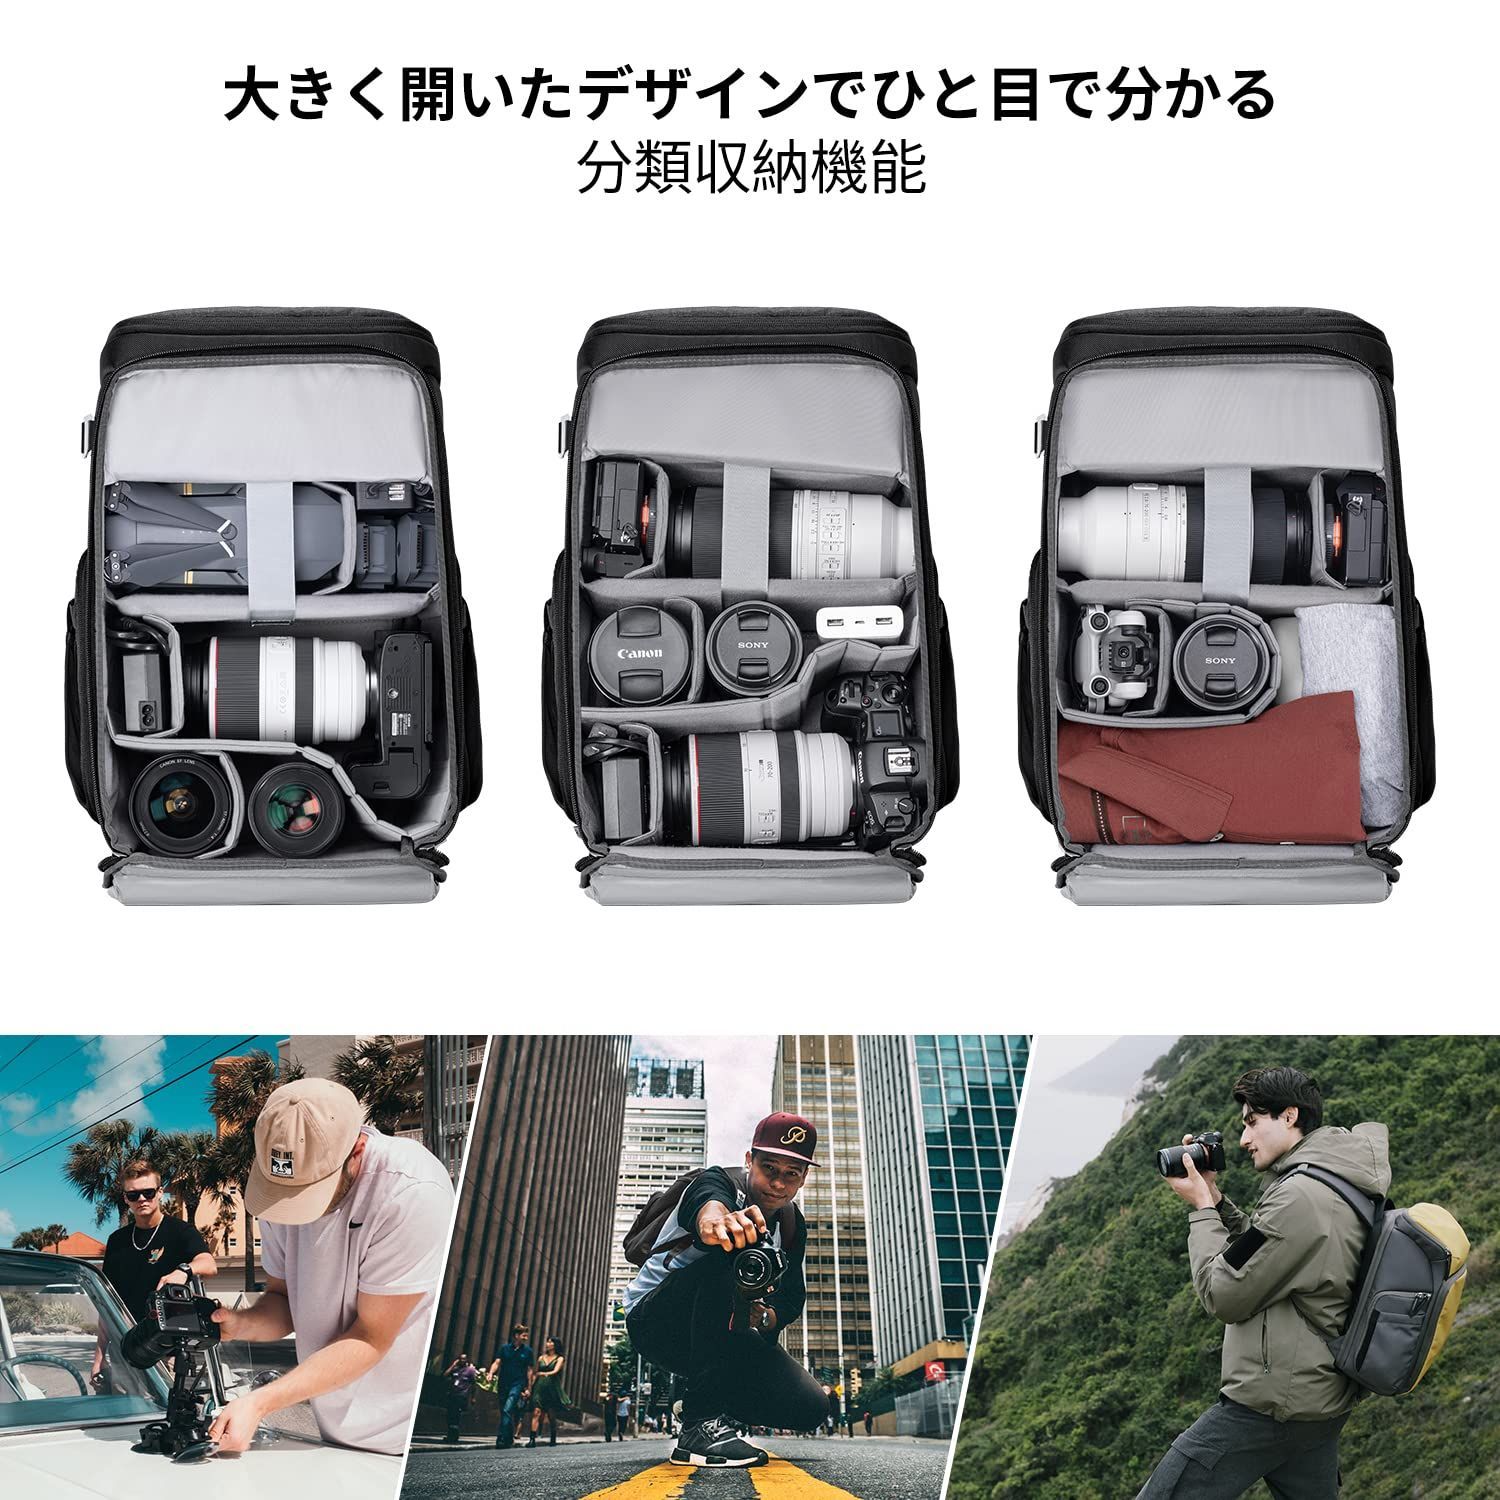 数量限定】K&F Concept カメラバッグ カメラバックパック カメラ